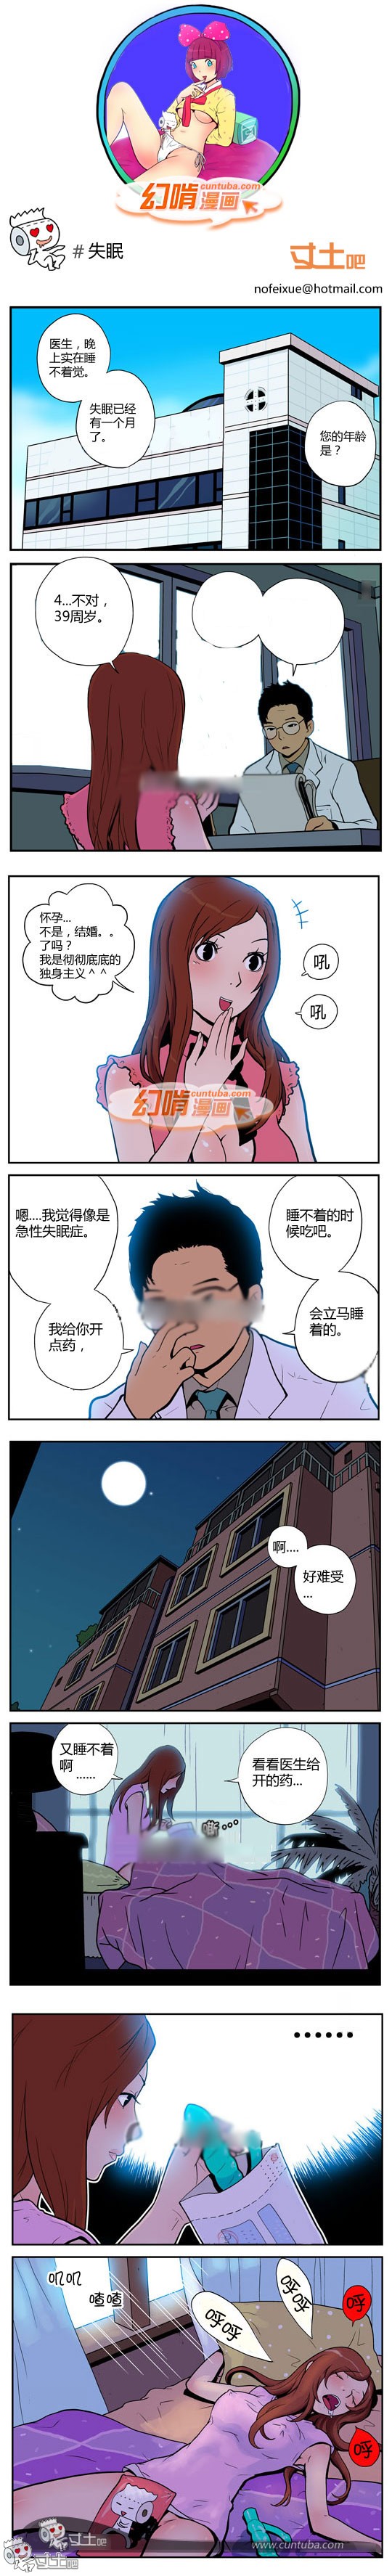 幻啃漫画失眠